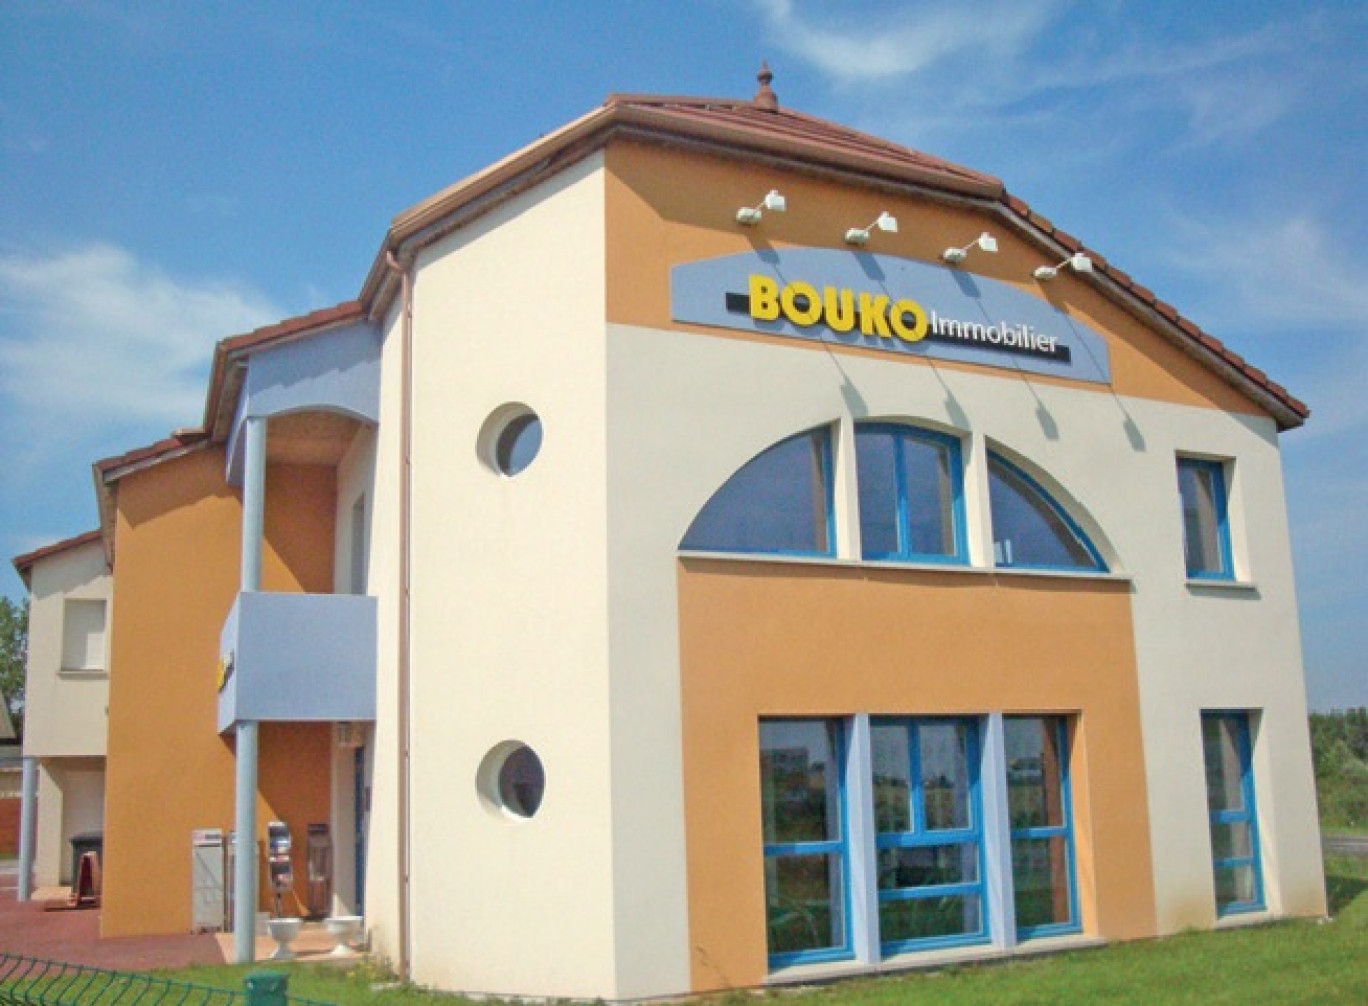 Bouko Immobilier réalise l’essentiel de son activité sur le secteur entre Lunéville et Nancy